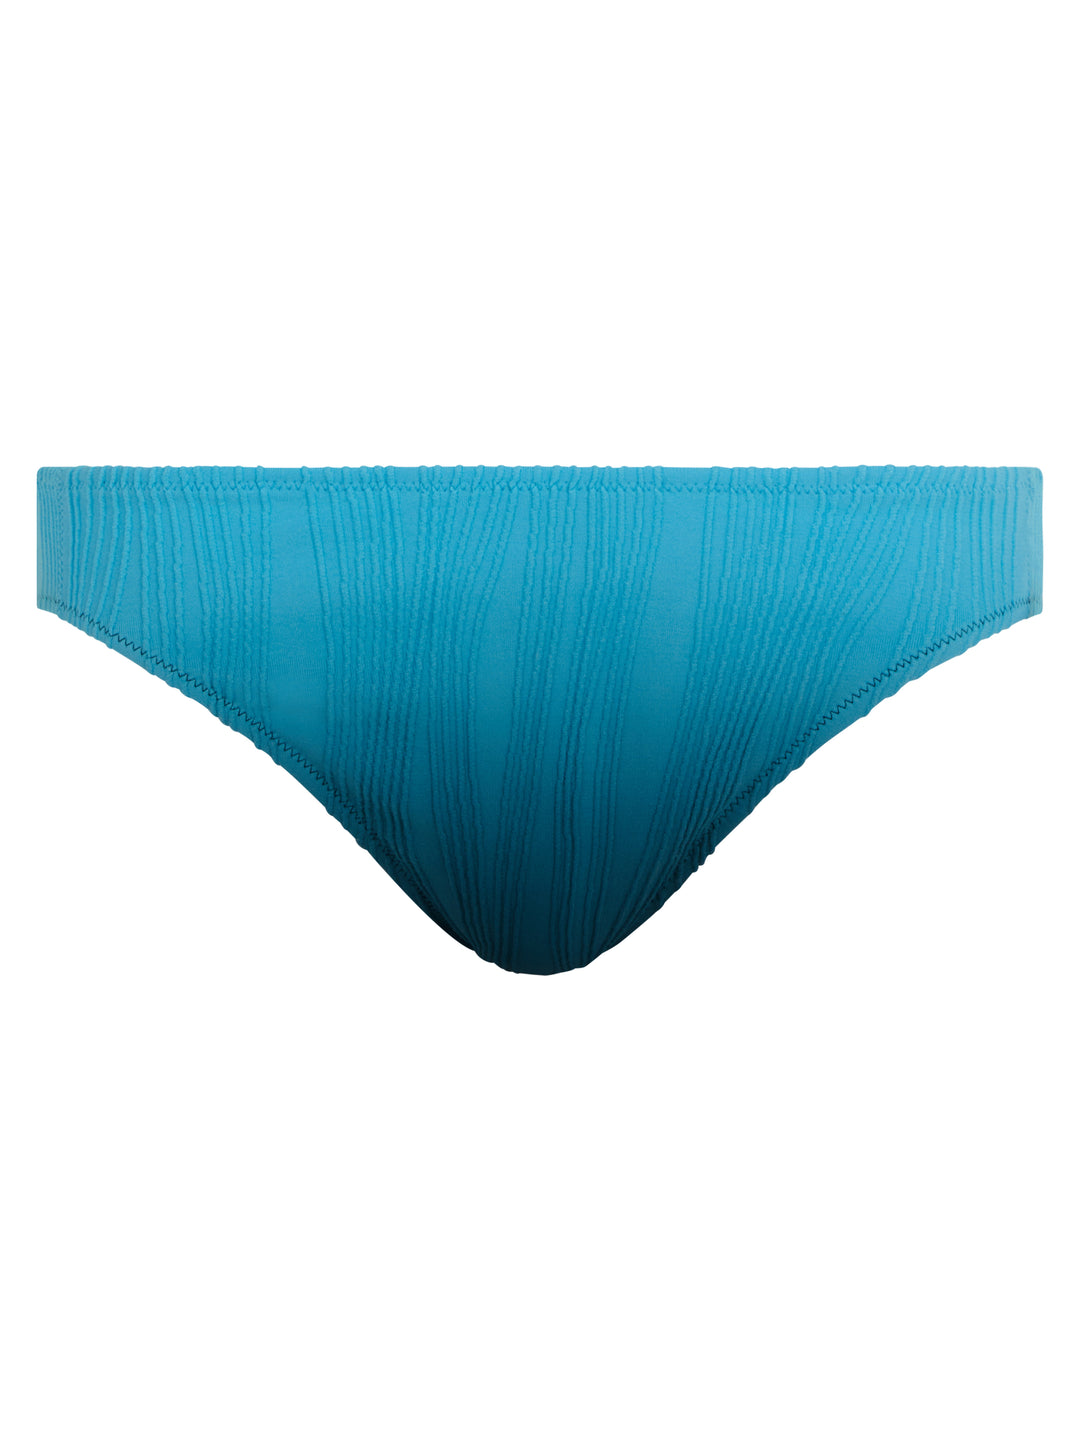 Chantelle Swimwear - Swim One Size Brief Blue tie & dye